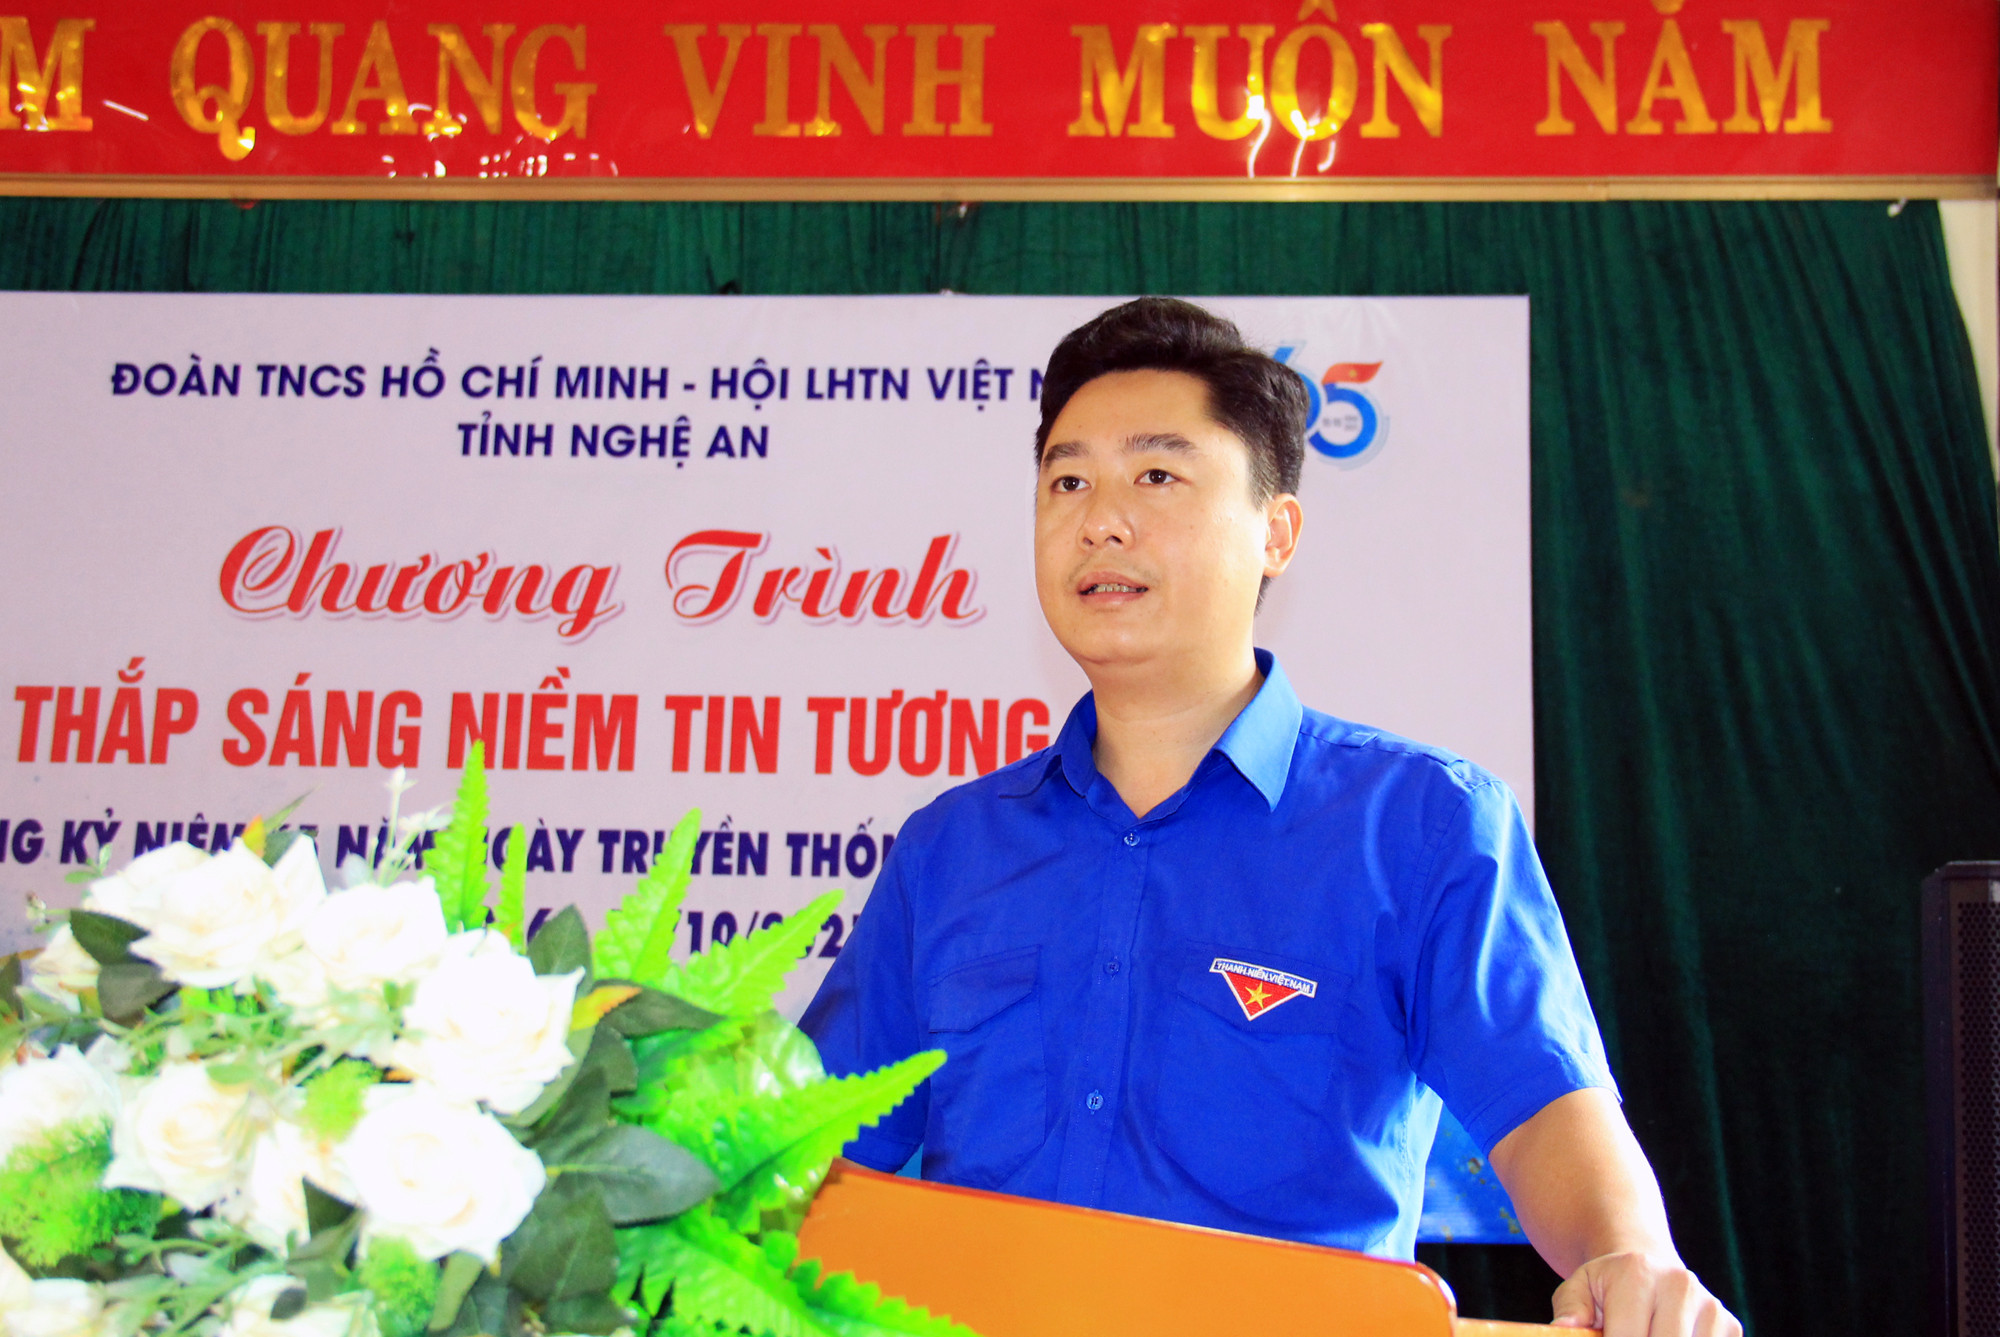 Ảnh: Thanh Quỳnh